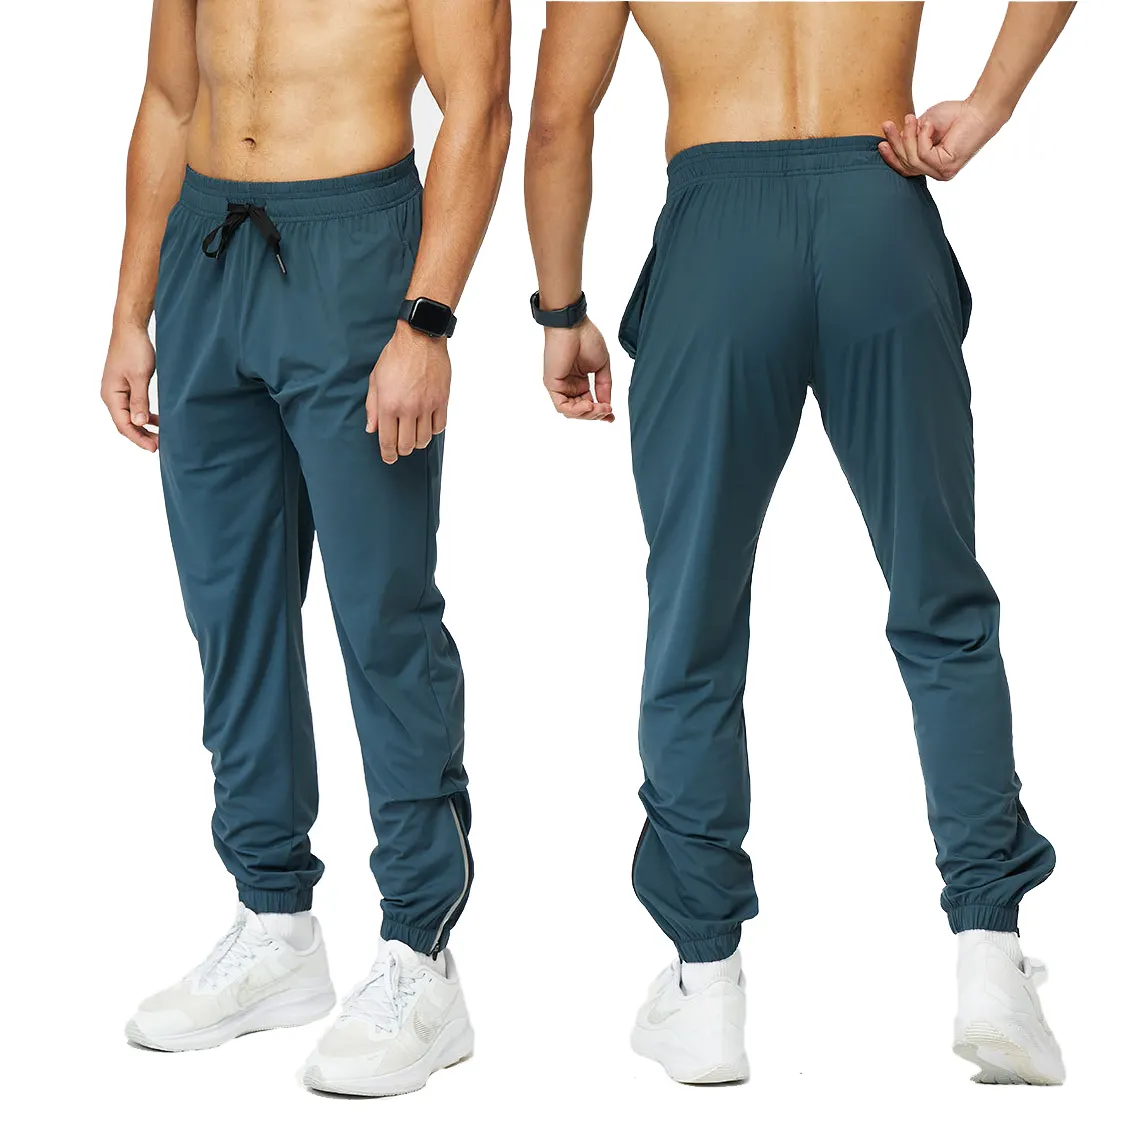 Soft Respirável Quick Dry Sport Caminhadas Calças Track Calças Men's fitness sweatpants